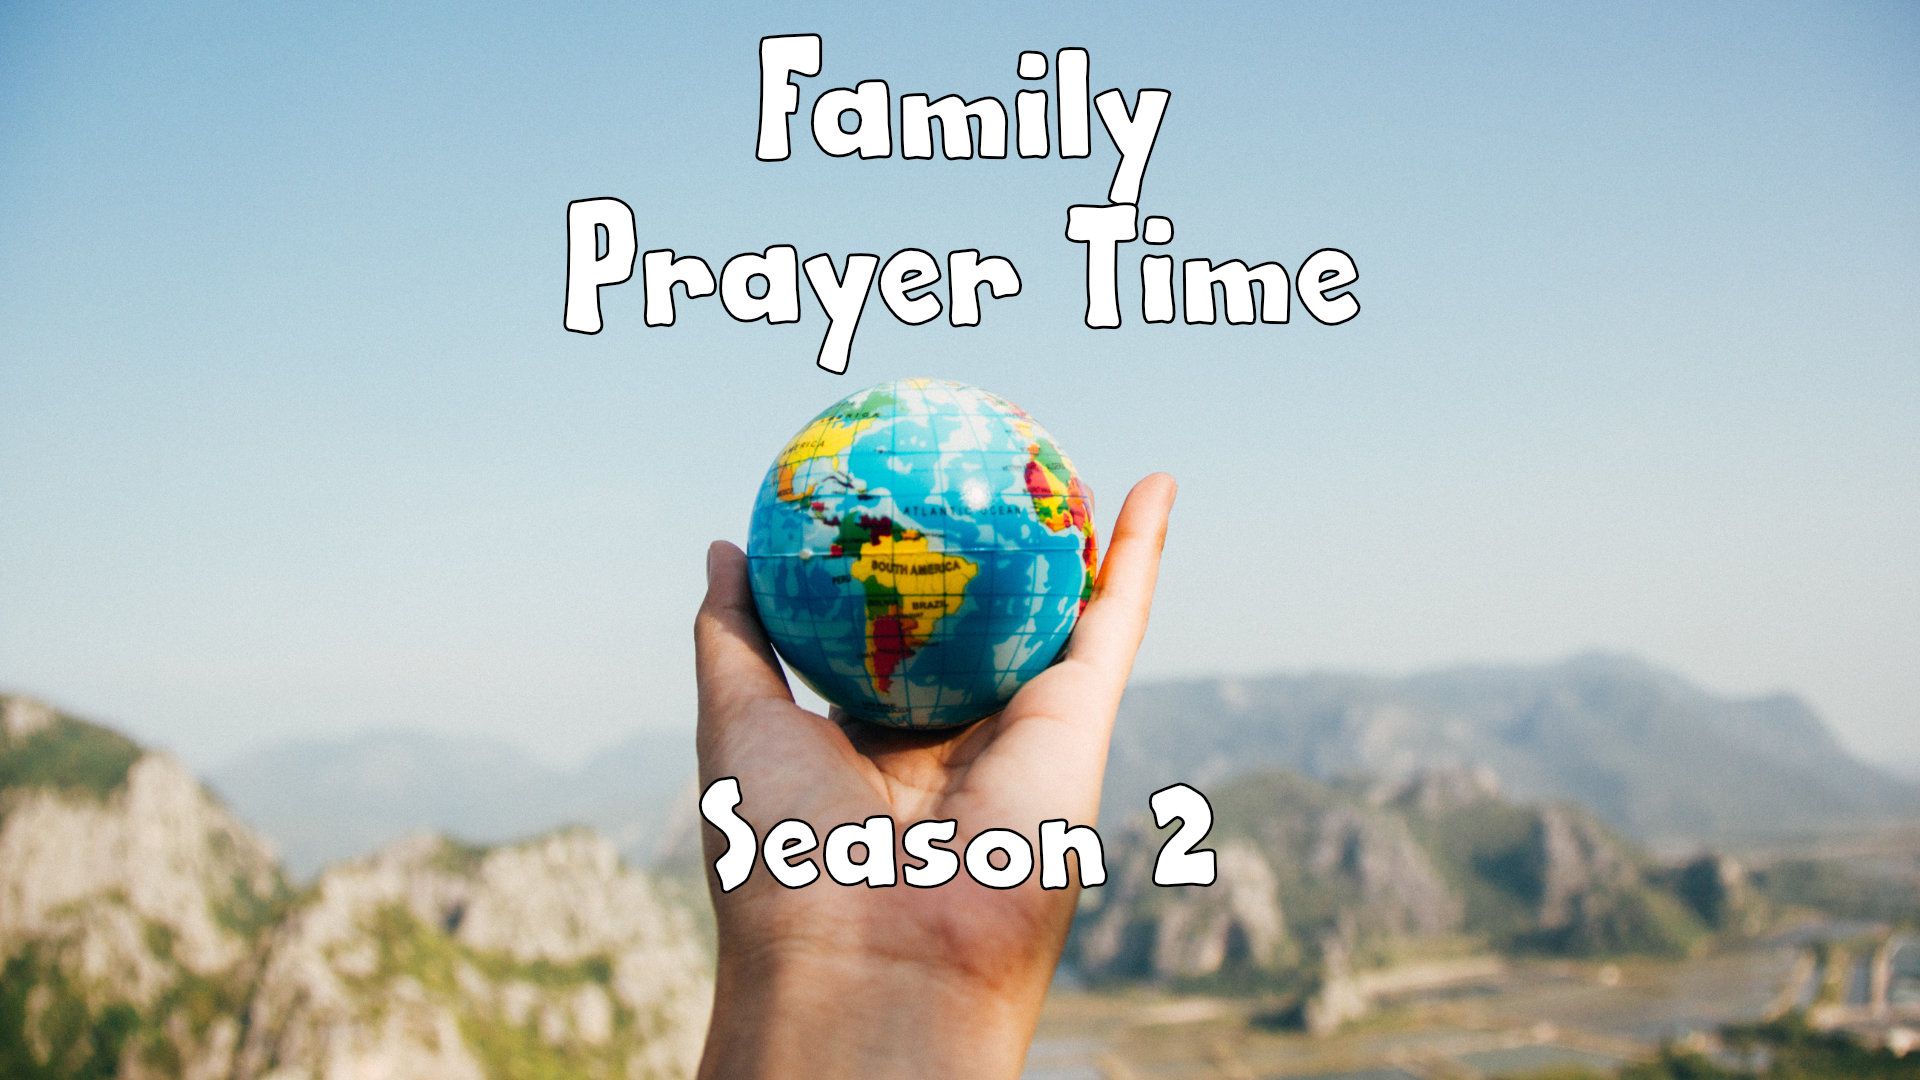 S2, Family Prayer Time